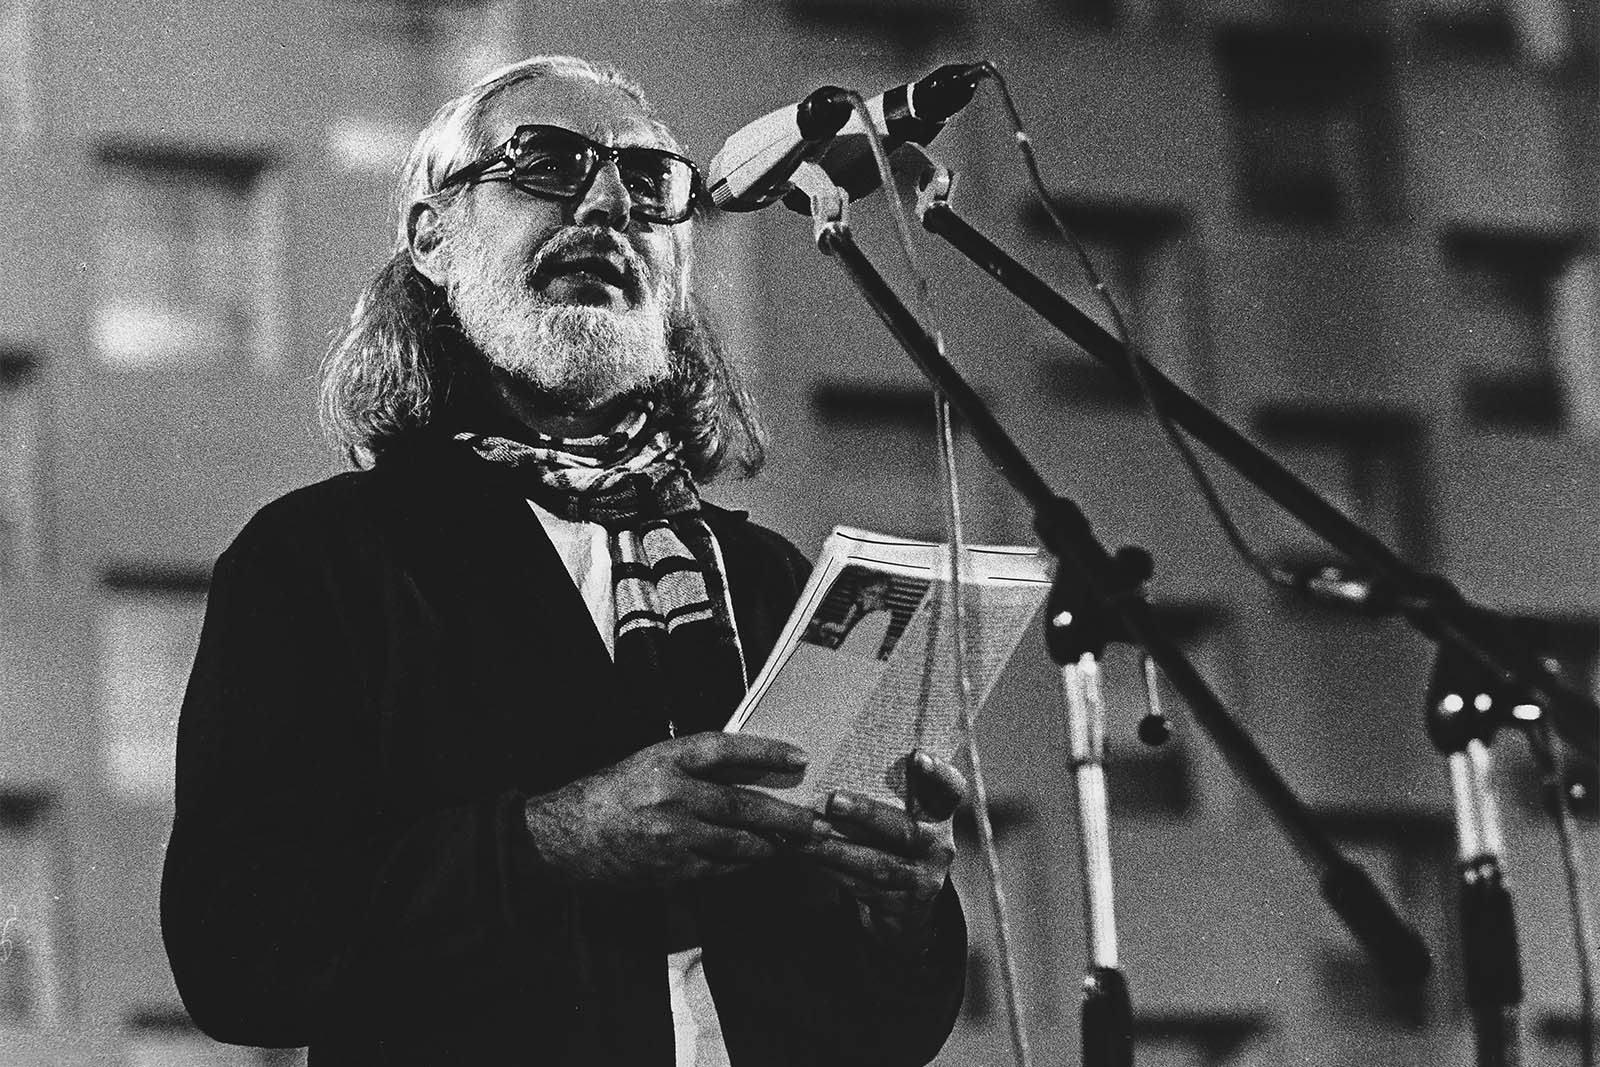 המשורר הניקרגואי ארנסטו קרדנל באירוע הקראת שירה בשנת 1980 (Photo by Lachmann/ullstein bild via Getty Images)